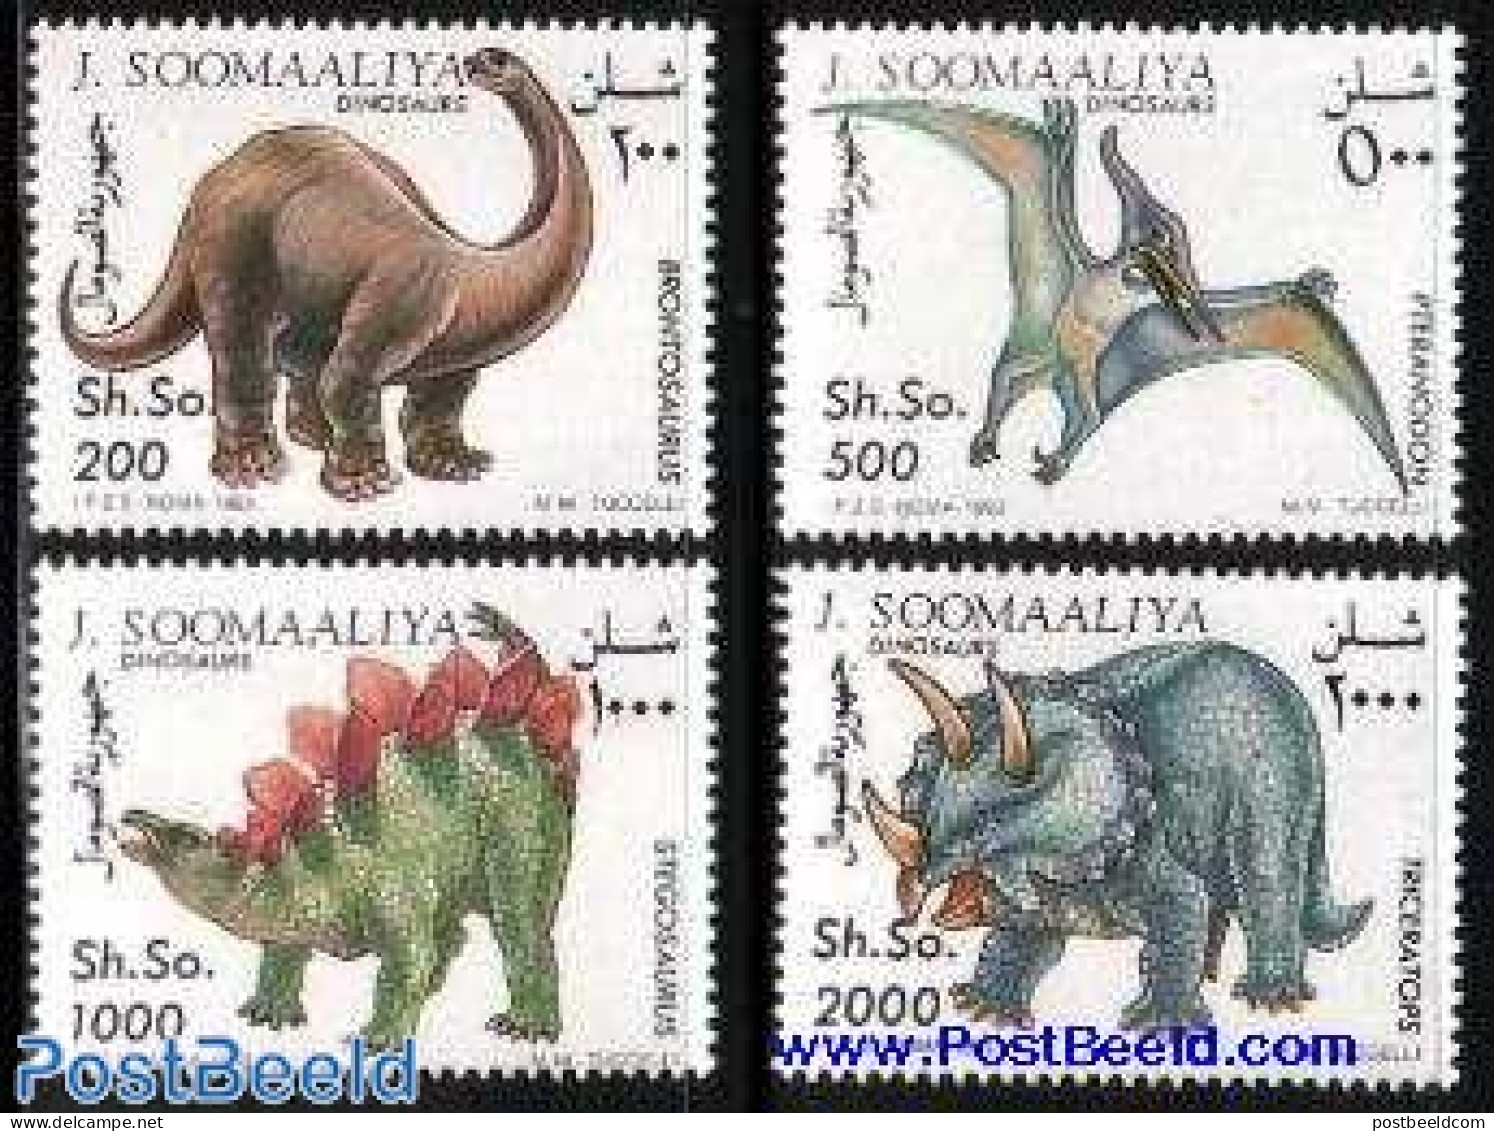 Somalia 1993 Prehistoric Animals 4v, Mint NH, Nature - Prehistoric Animals - Prehistorics